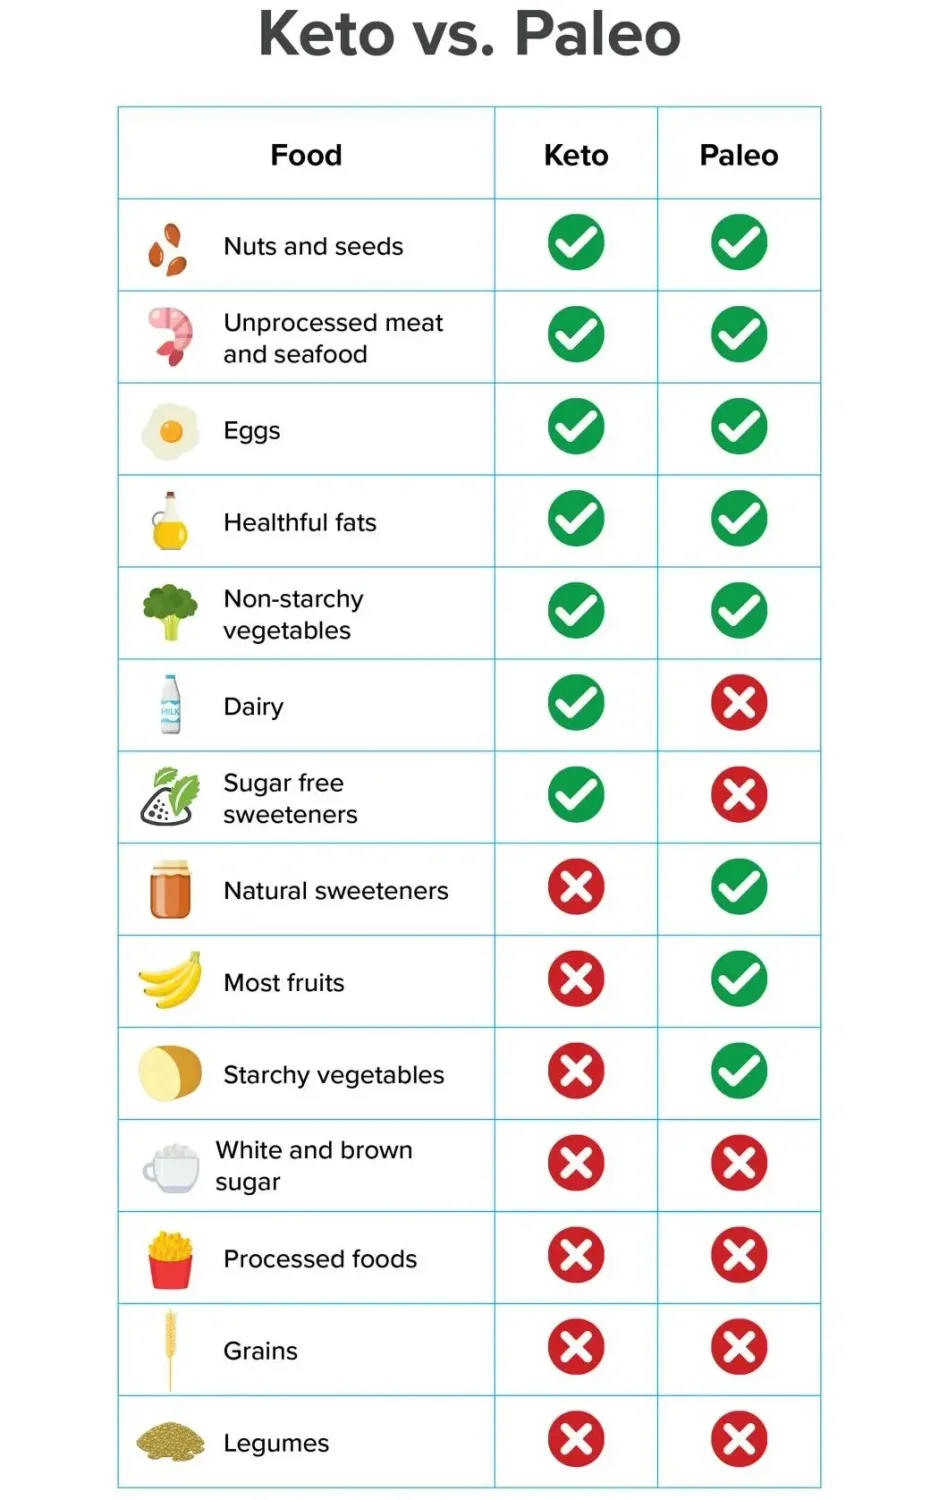 Keto vs. Paleo Diet Food Chart